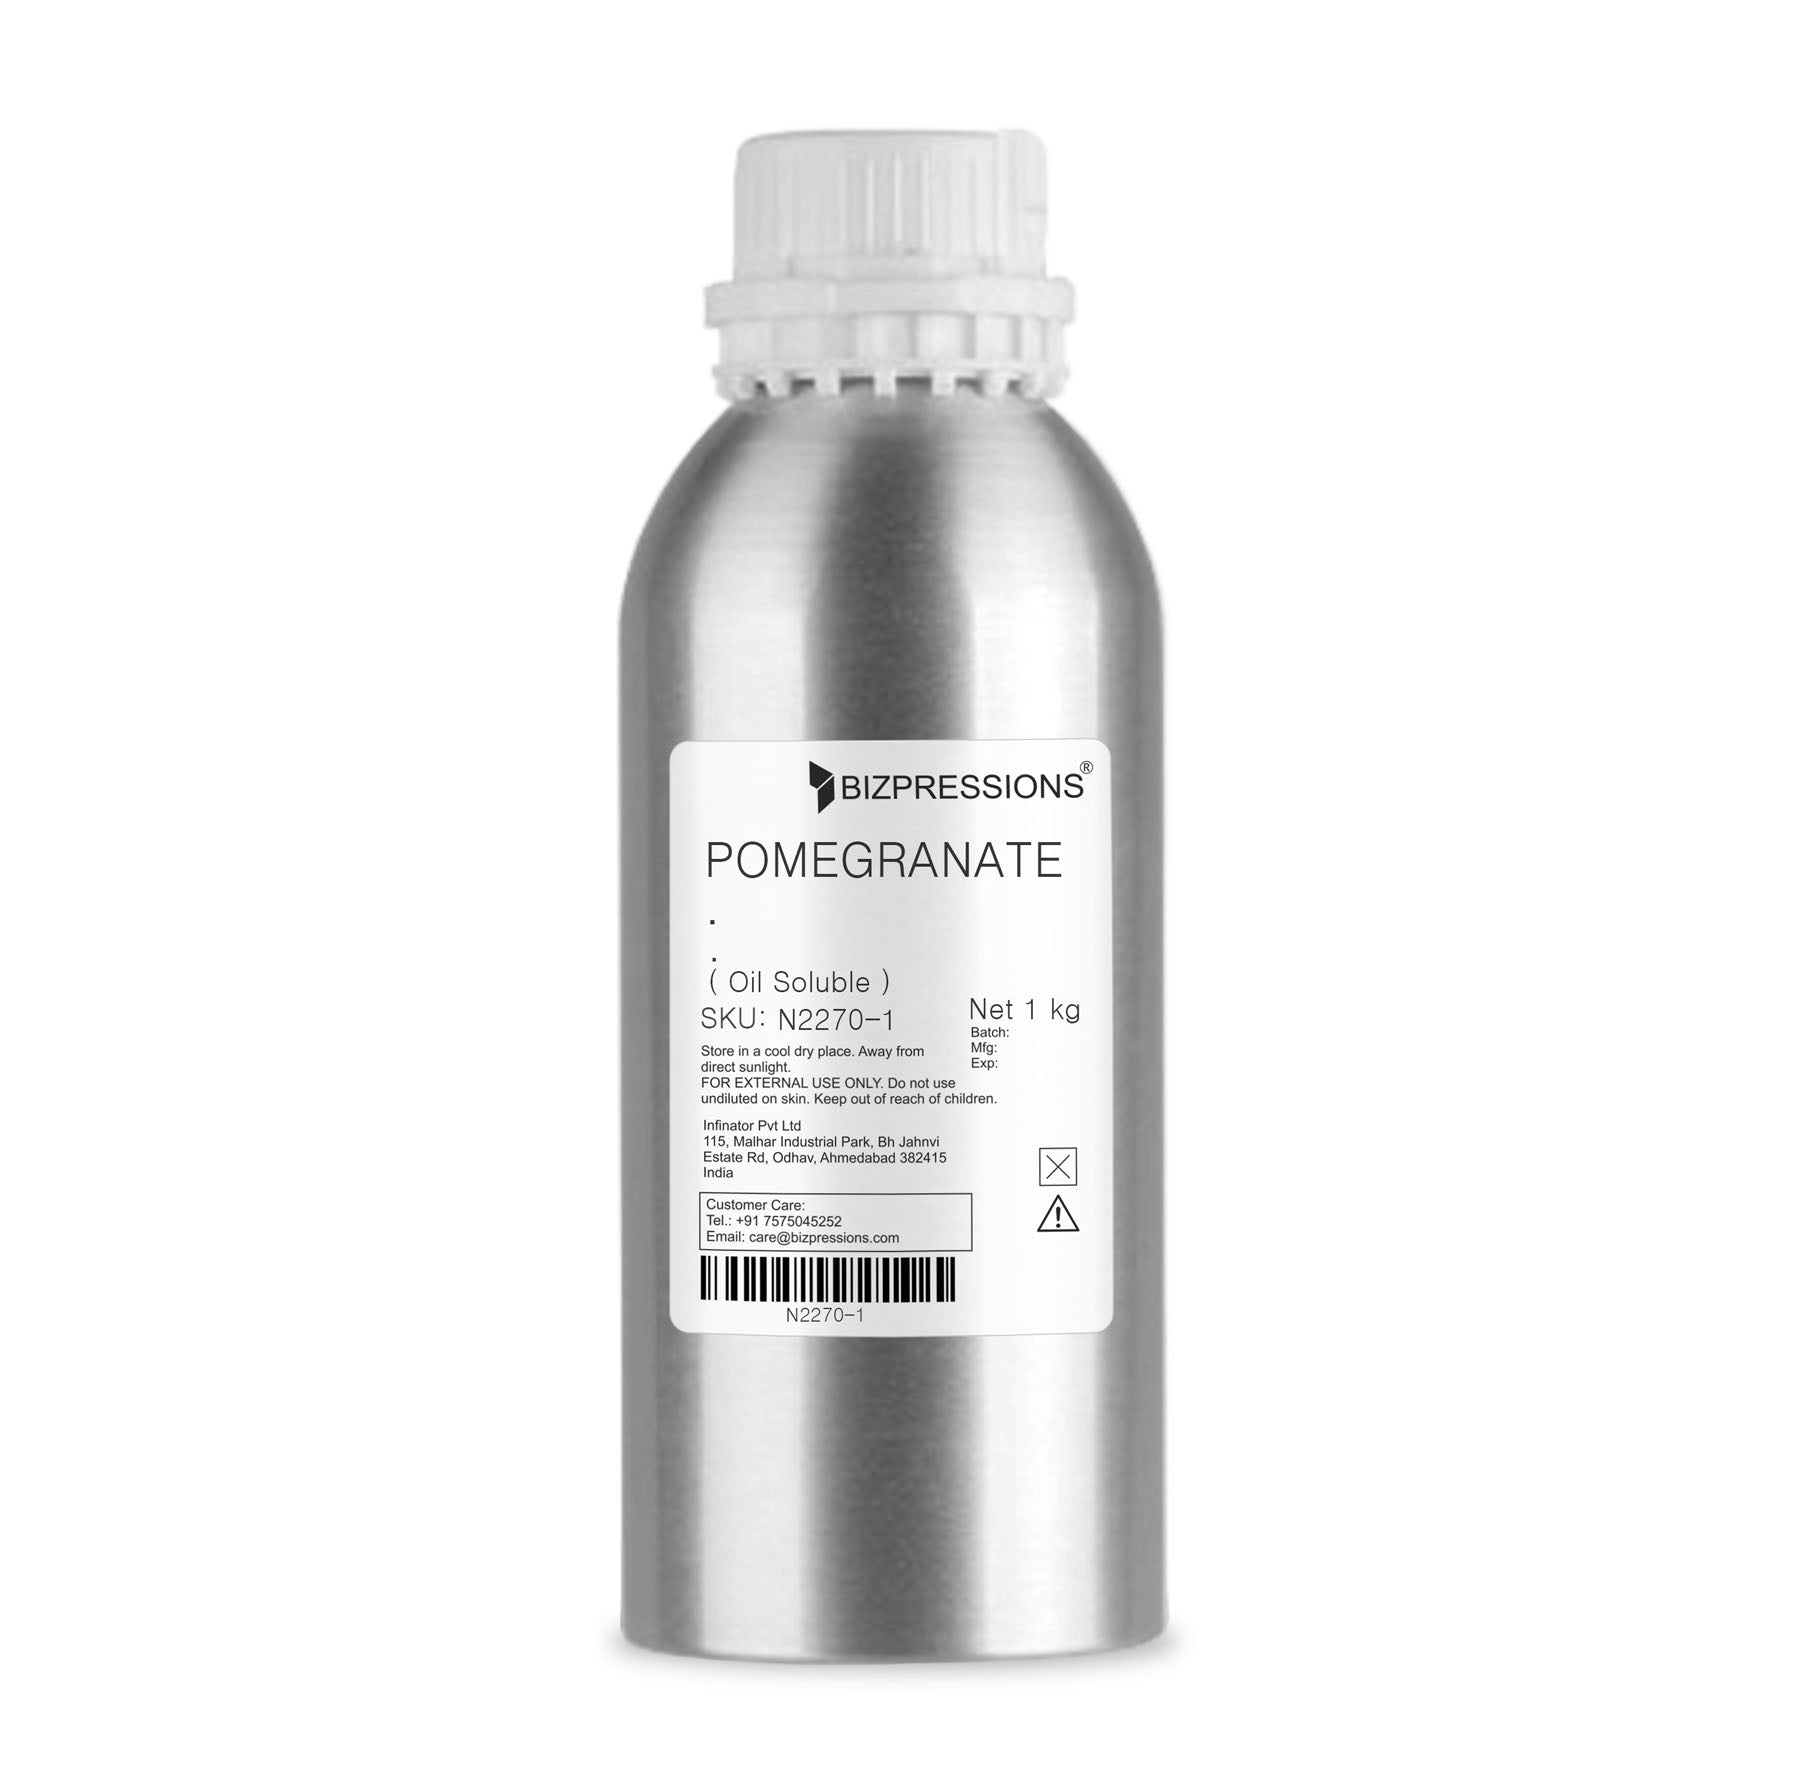 POMEGRANATE - Fragrance ( Oil Soluble ) - 1 kg